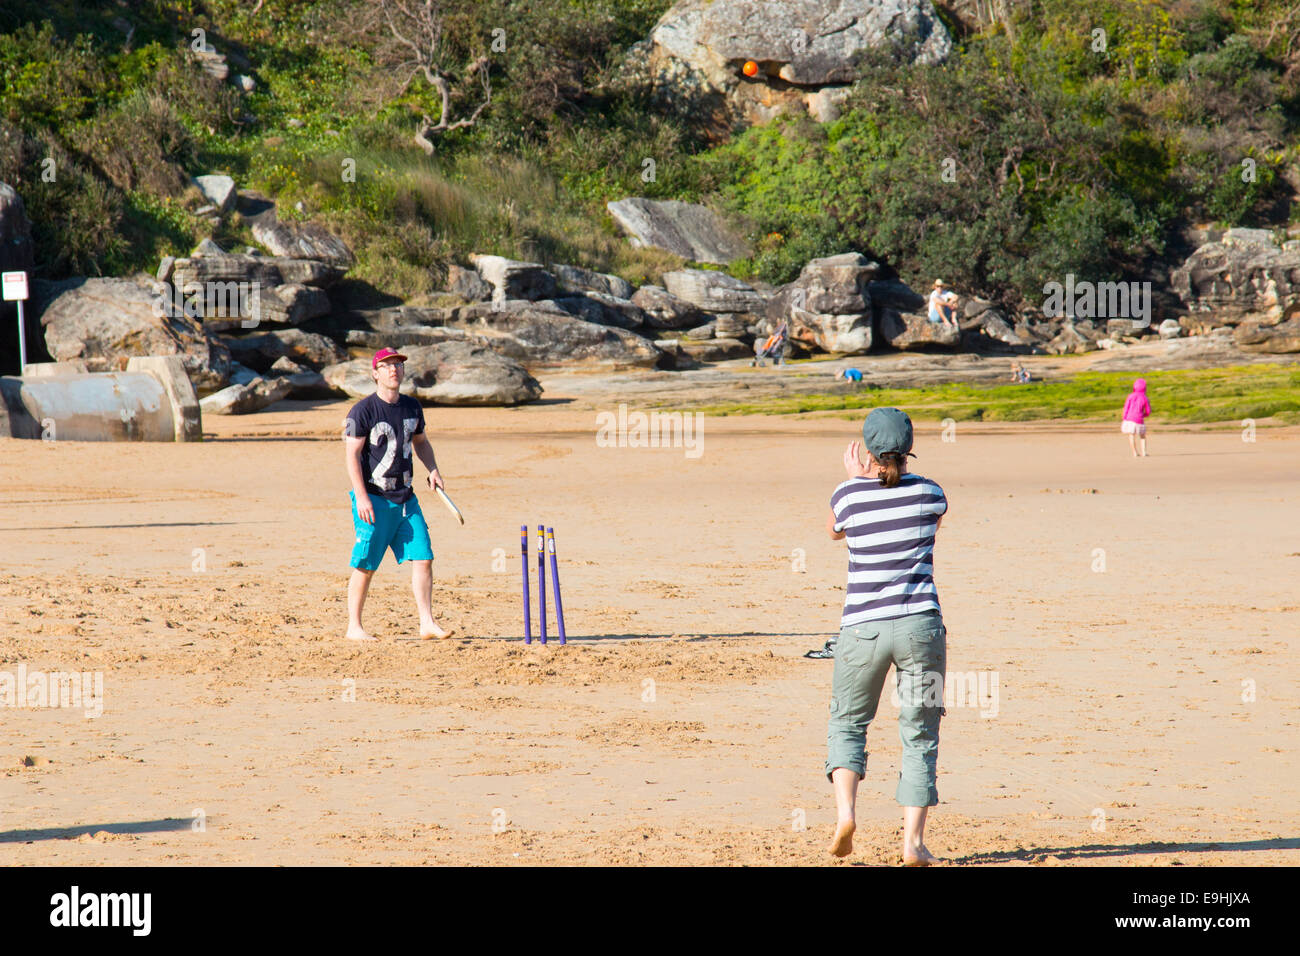 Mari et femme jouer beach cricket sur plage d'eau douce,Sydney, Australie Banque D'Images